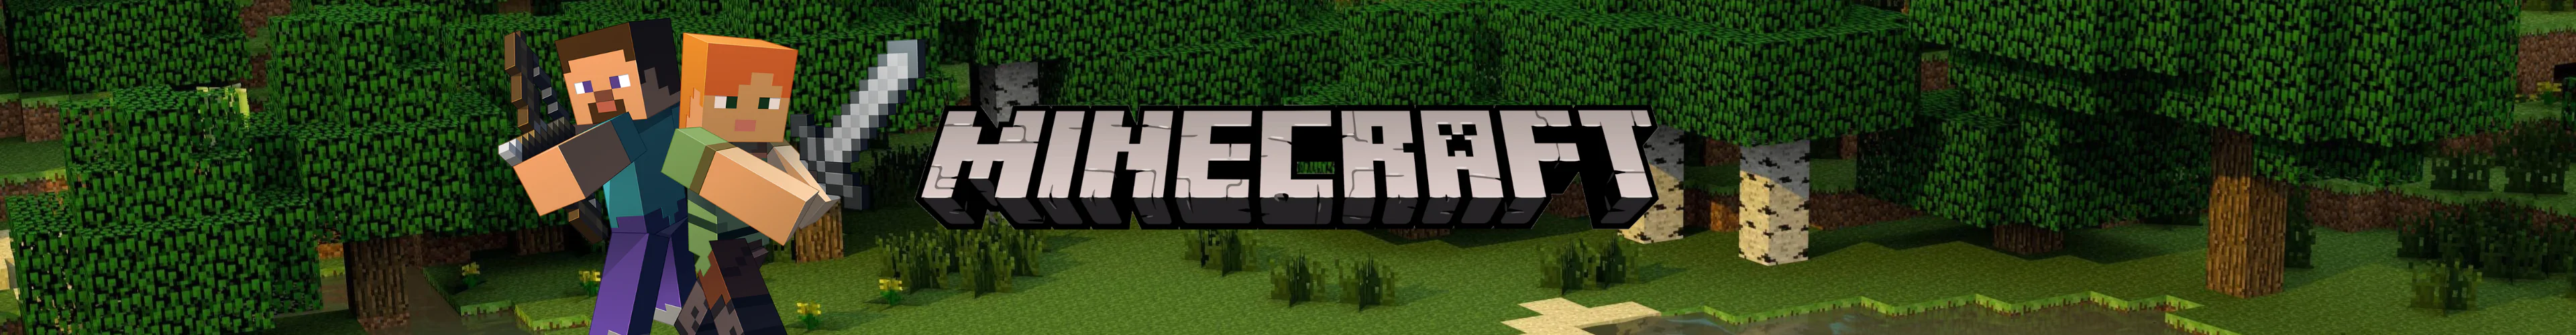 Minecraft puzzles banner